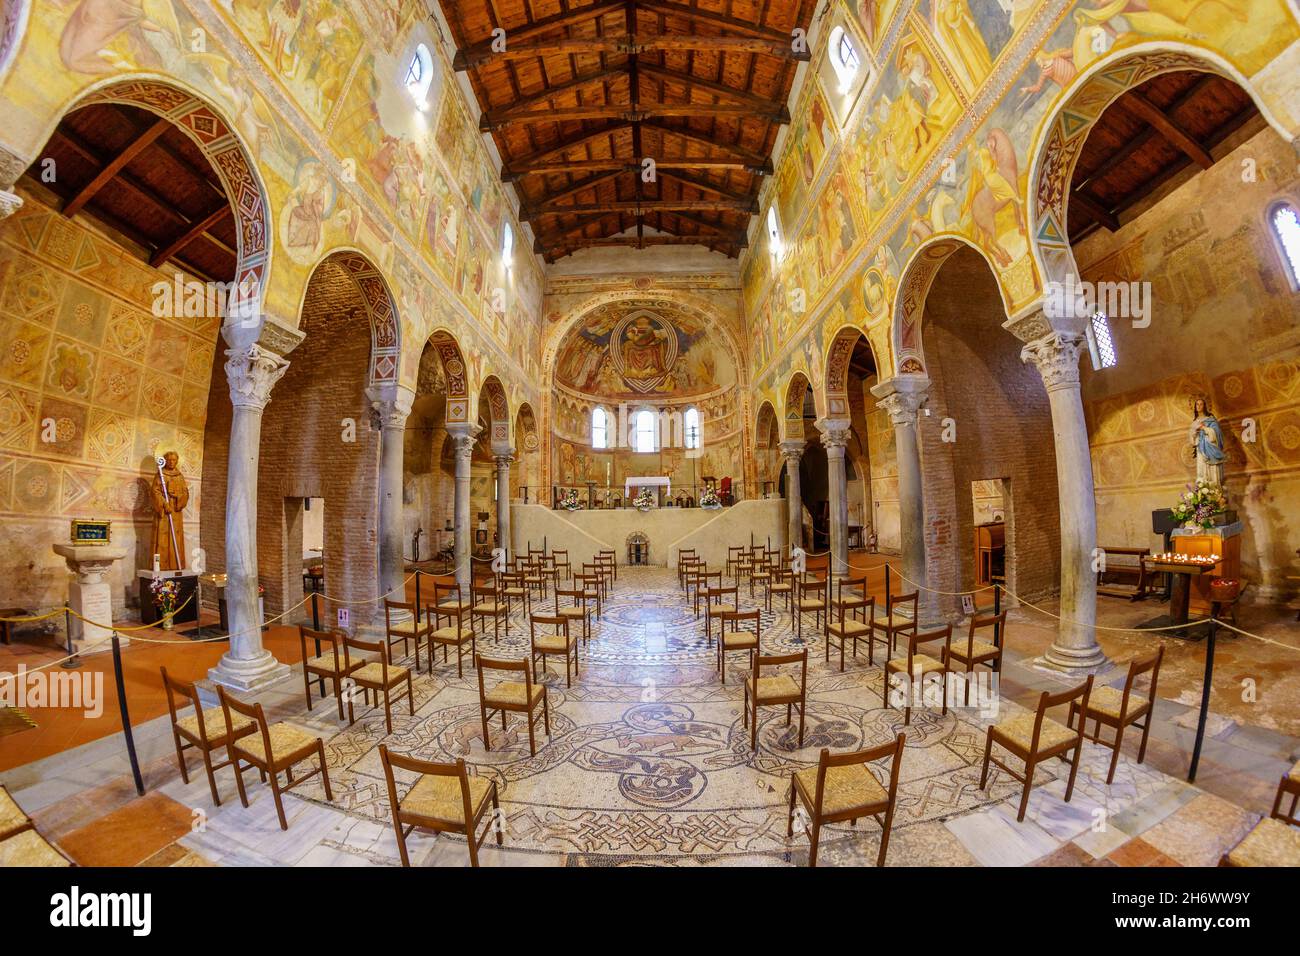 Intérieur de l'abbaye de Pomposa, Codigoro, Italie Banque D'Images